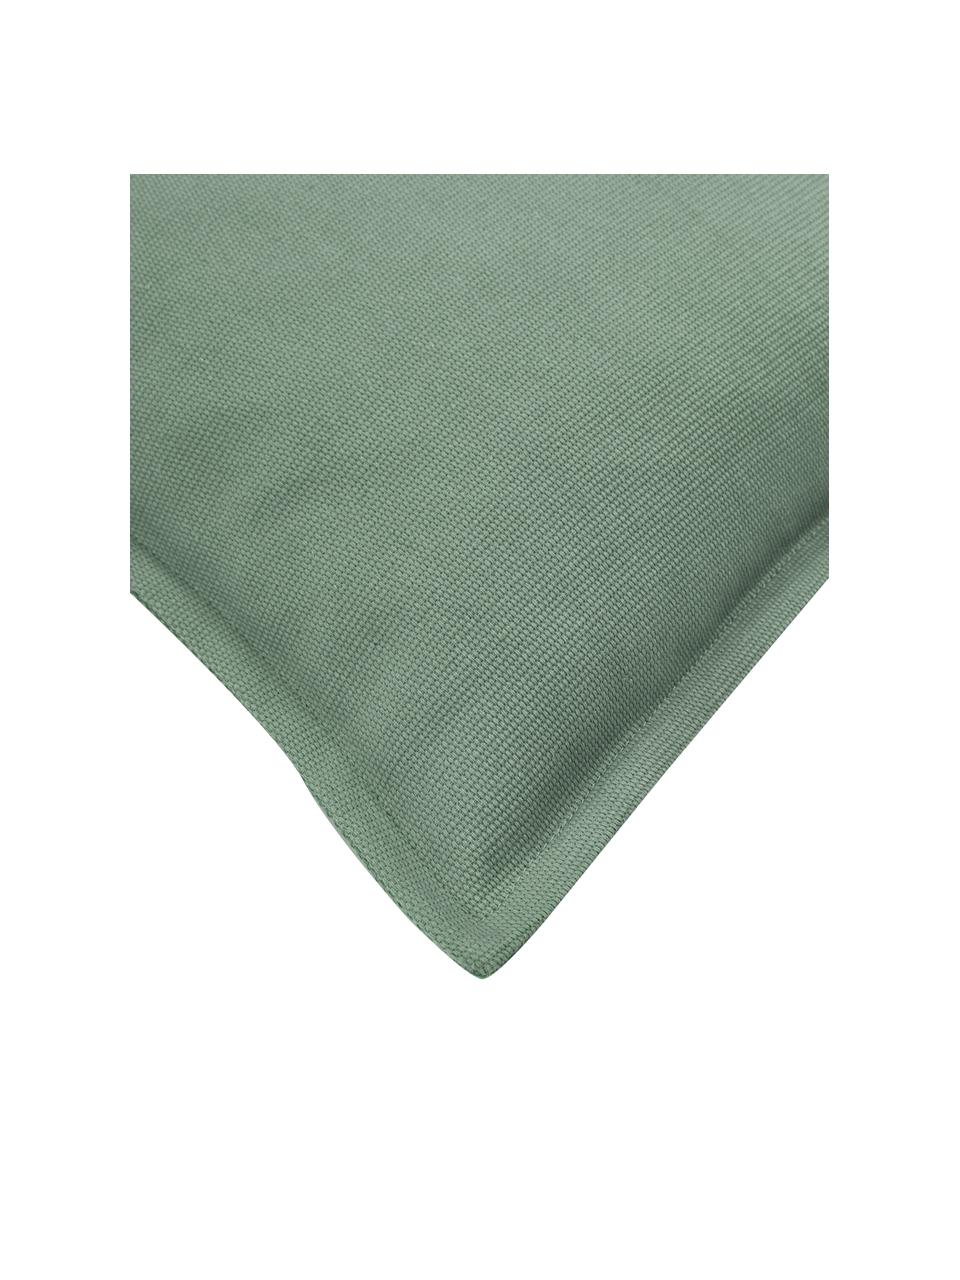 Poszewka na poduszkę z bawełny Mads, 100% bawełna, Zielony, S 30 x D 50 cm